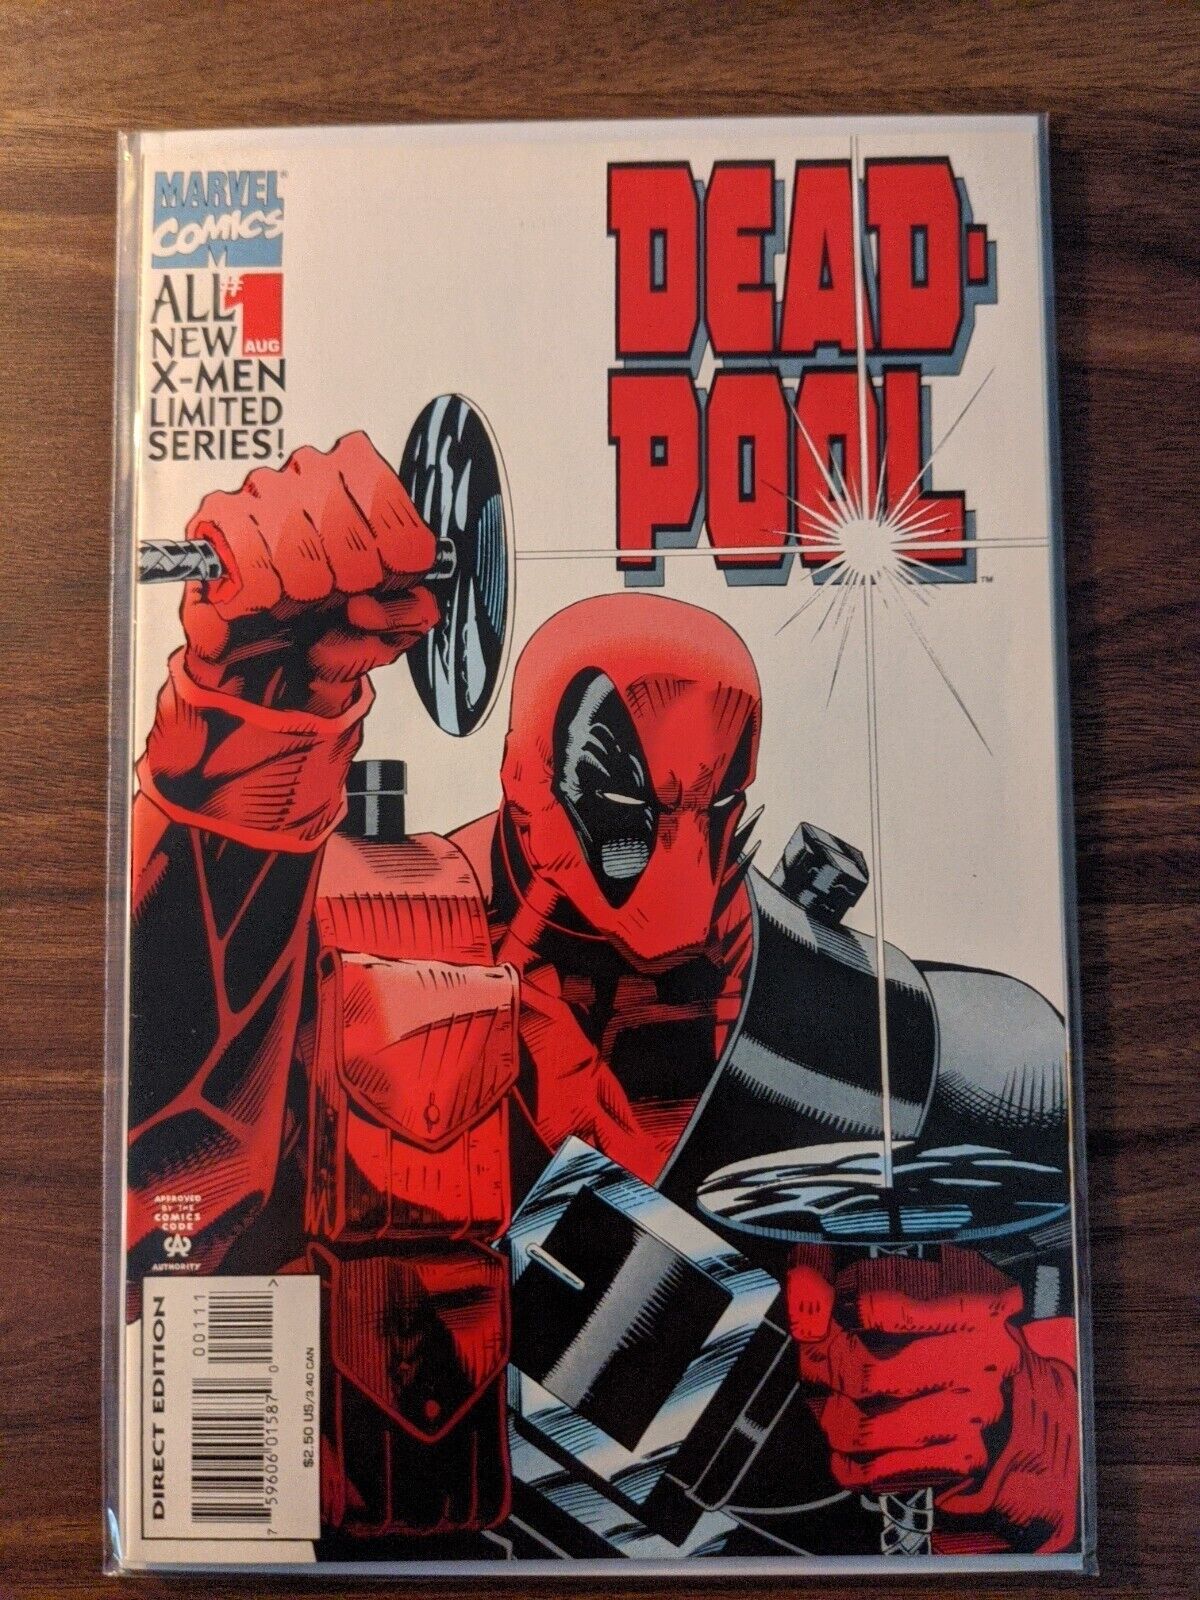 Deadpool #1-4 Volume 1 - Full set (NM)